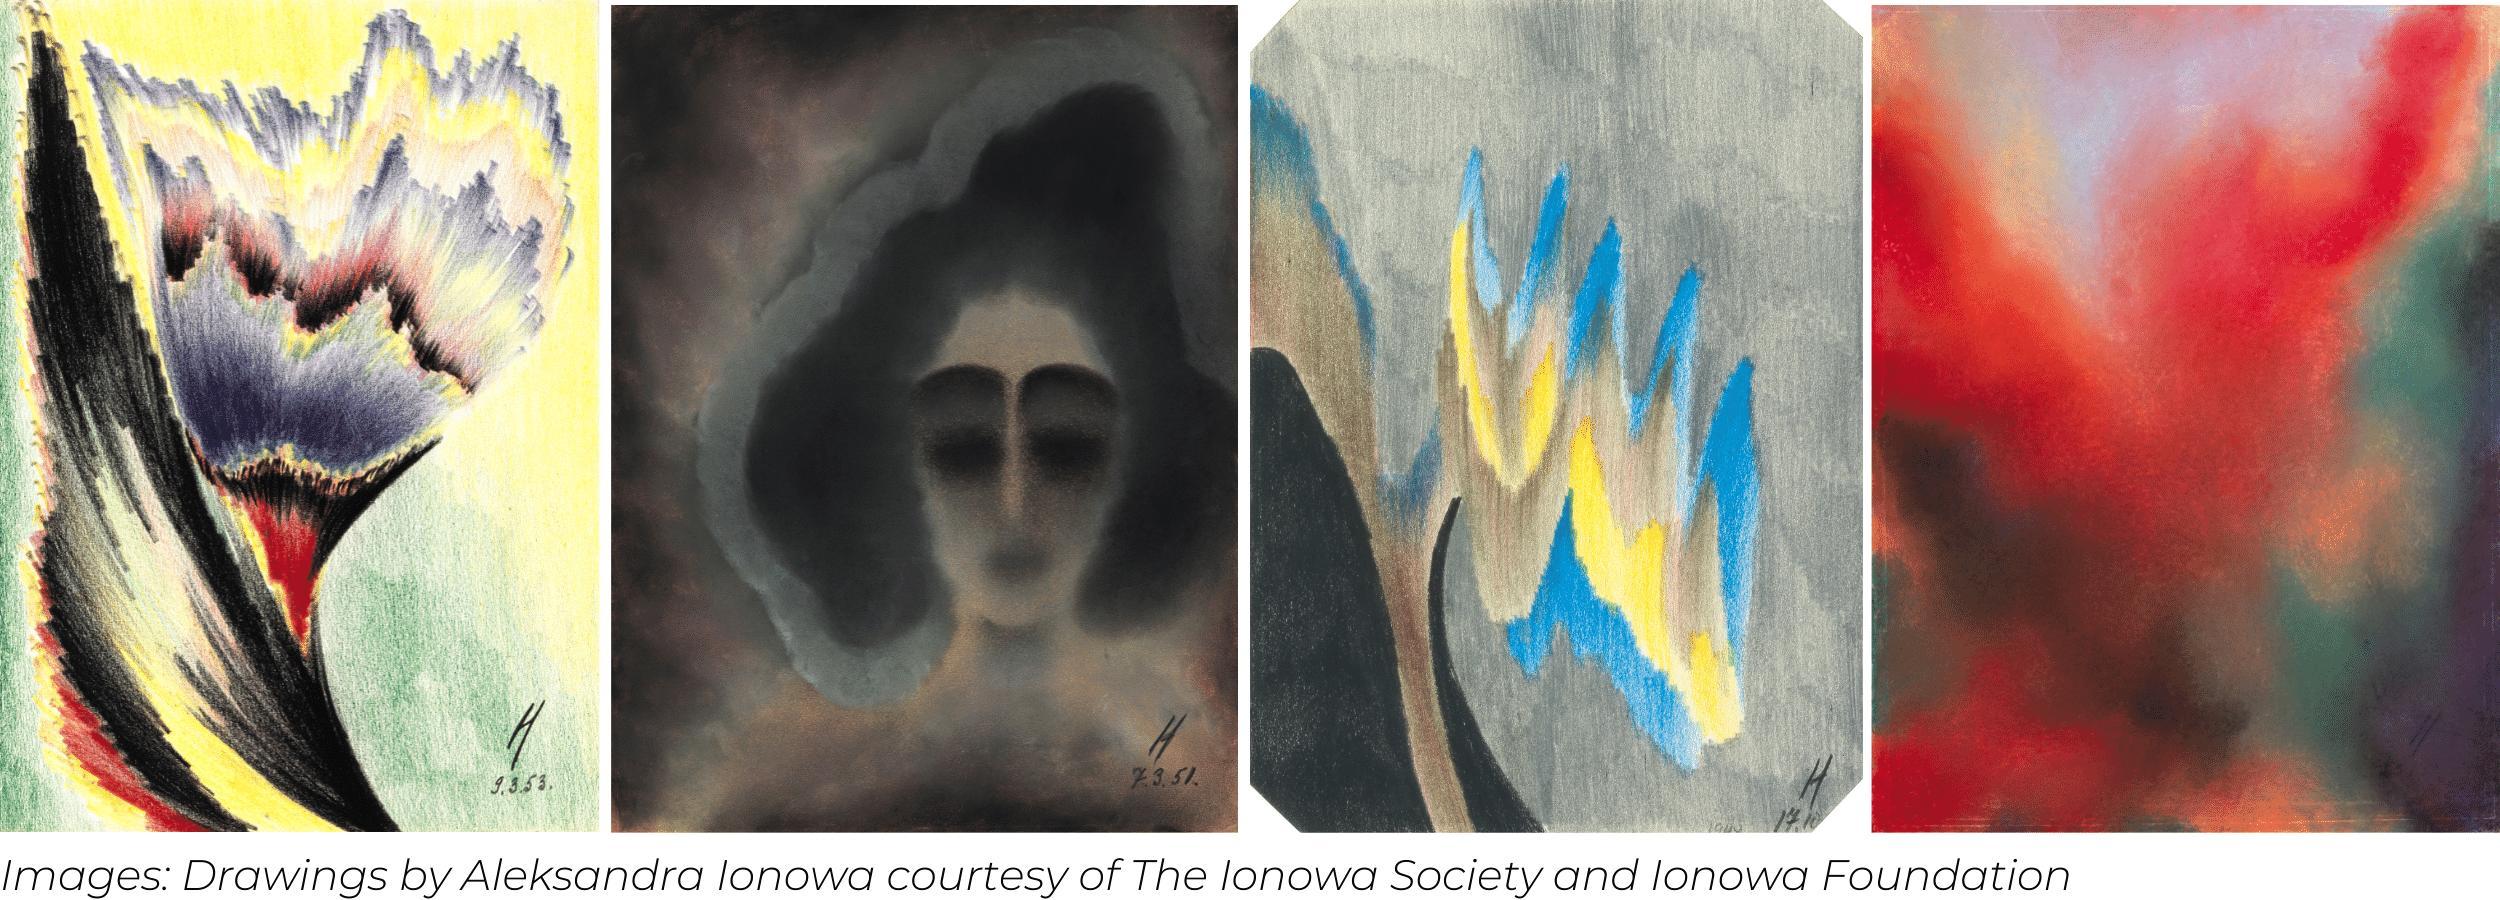 Four drawings by Aleksandra Ionowa courtesy of The Ionowa Society and Ionowa Foundation